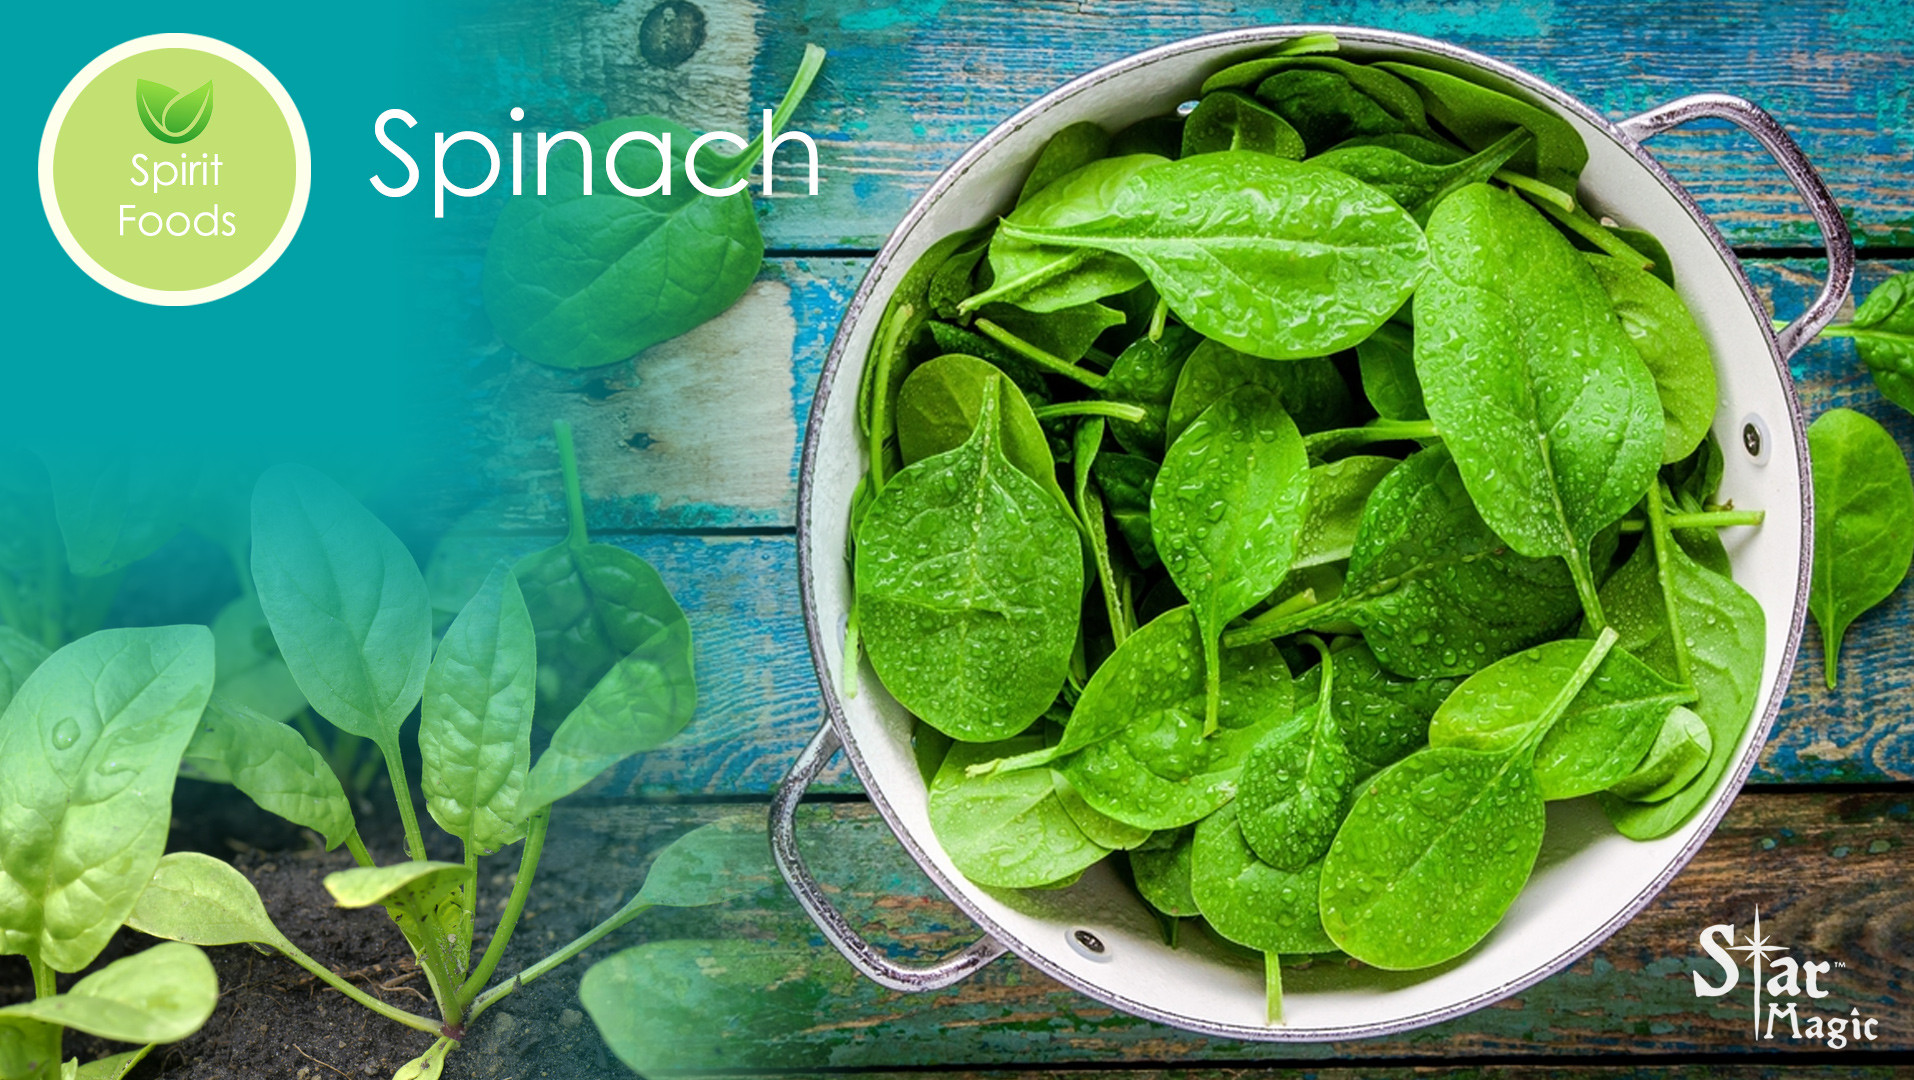 Spirit Food – Spinach